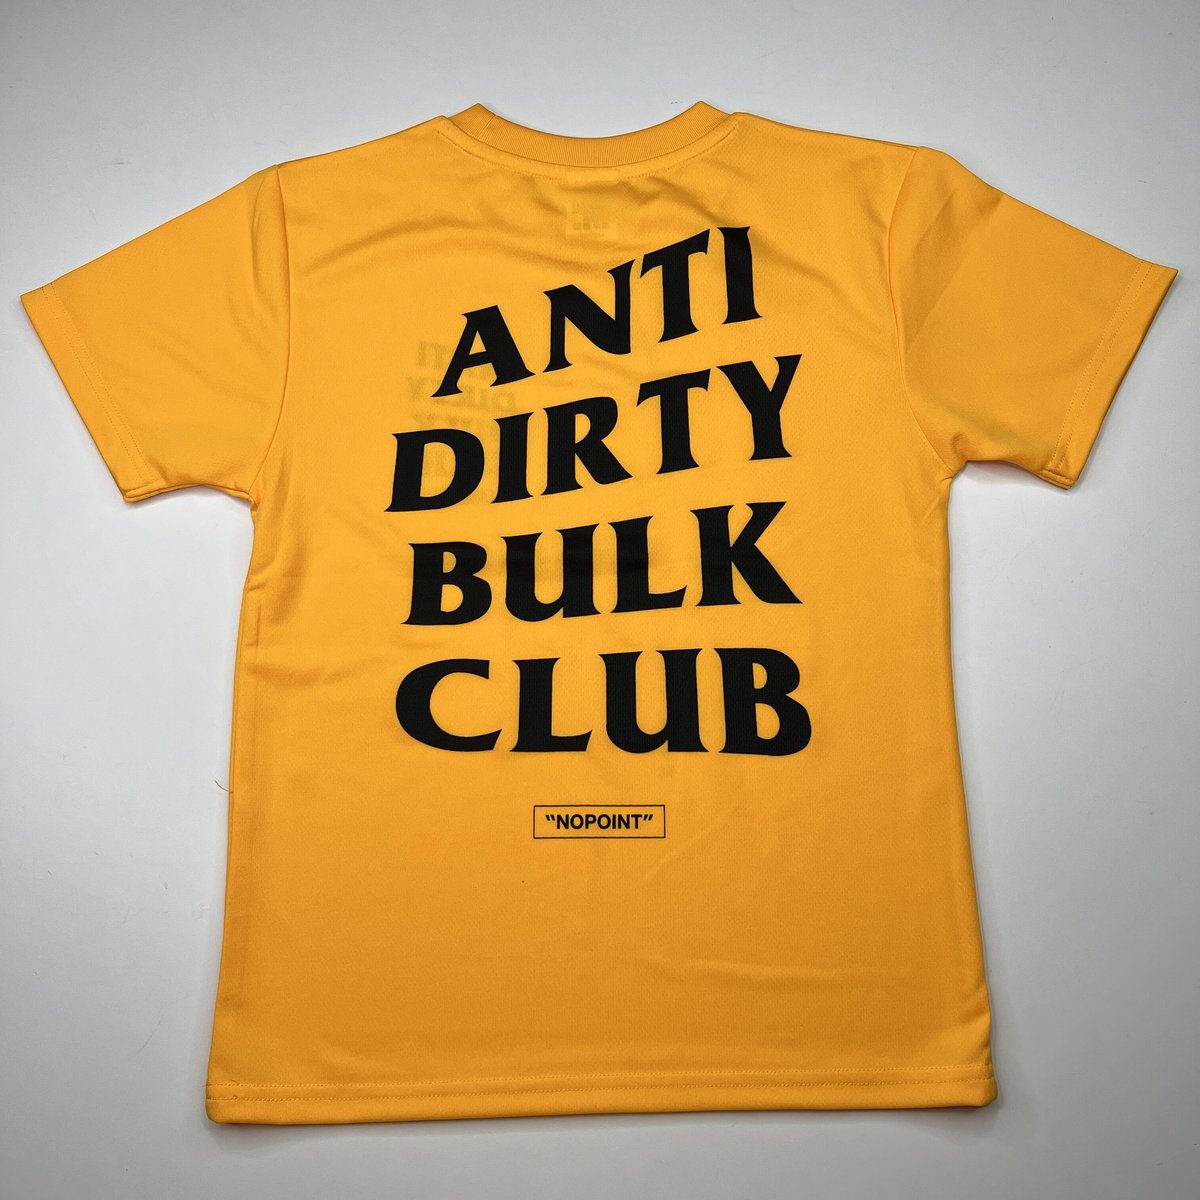 ANTI DIRTY BULK CLUB “DRY” T-Shirt [KIDS] - gold/black